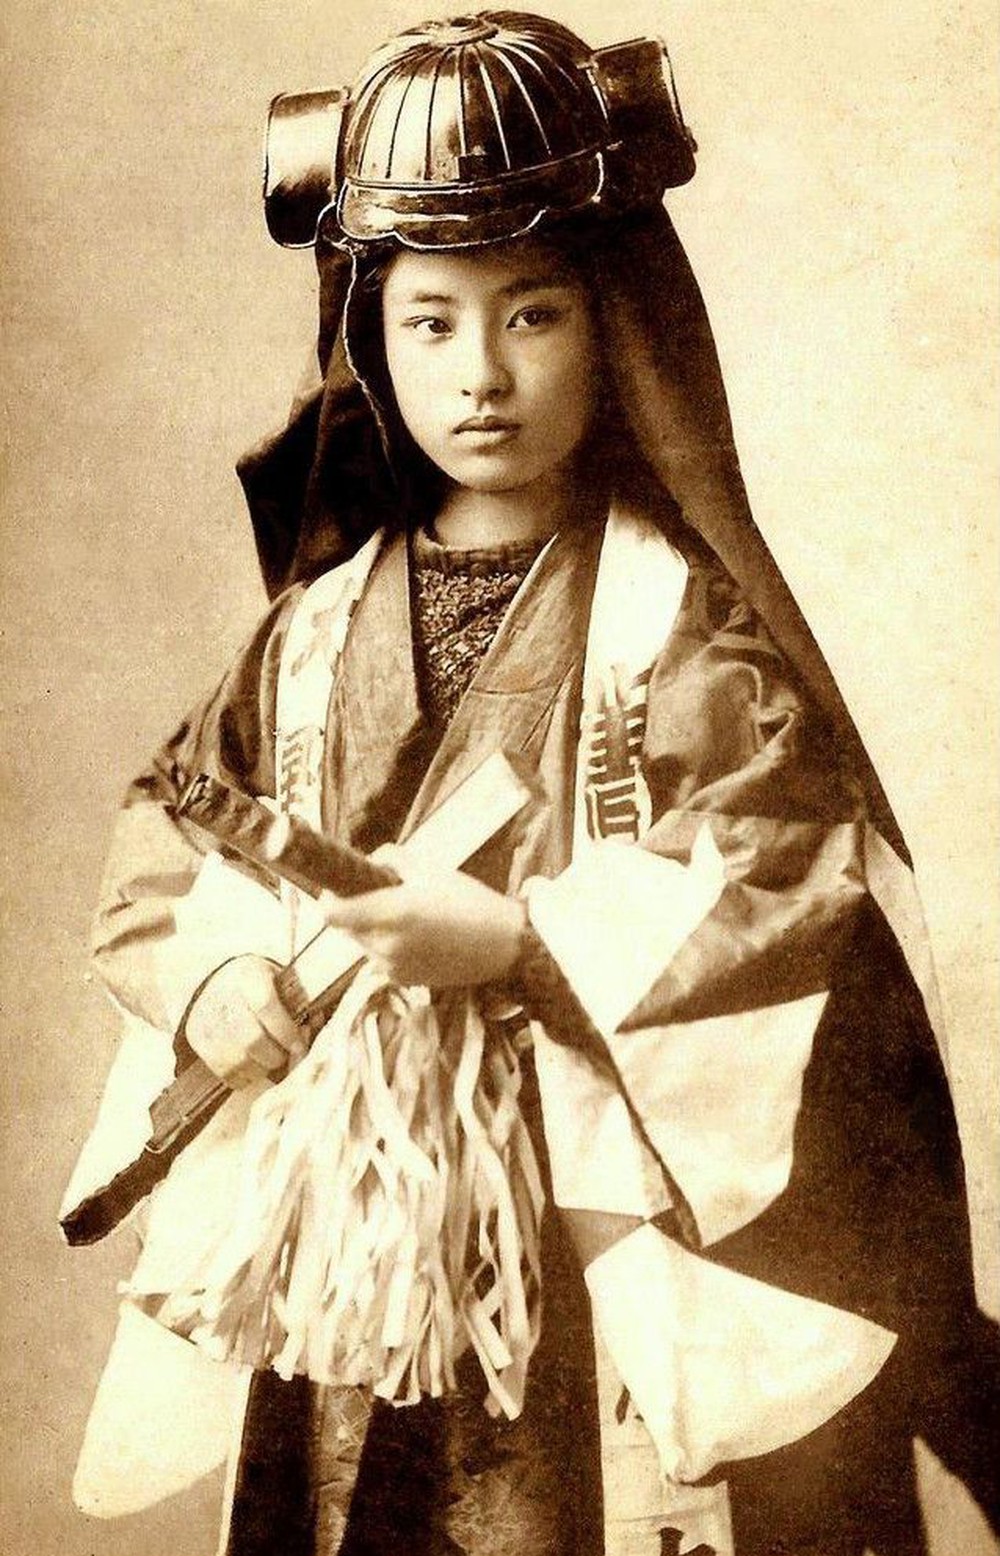 Loạt ảnh hiếm khoe trọn dung mạo cuốn hút lạ thường của các nữ samurai thời xưa - ảnh 4